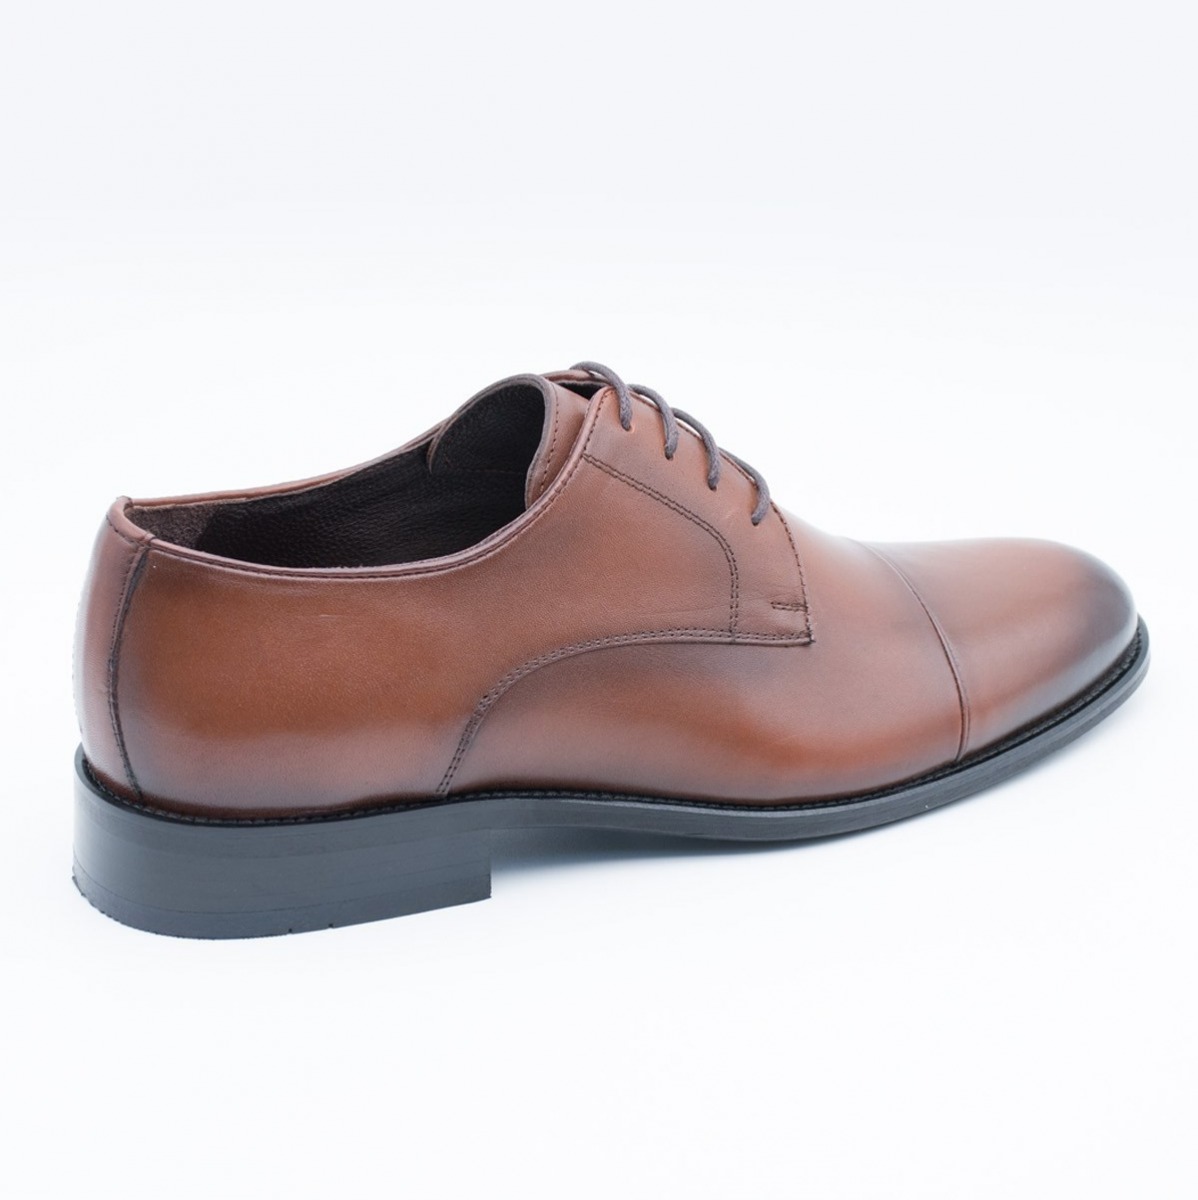 Flo Erkek Deri Klasik Ayakkabı İ17523-4 M 1000 TABA. 2